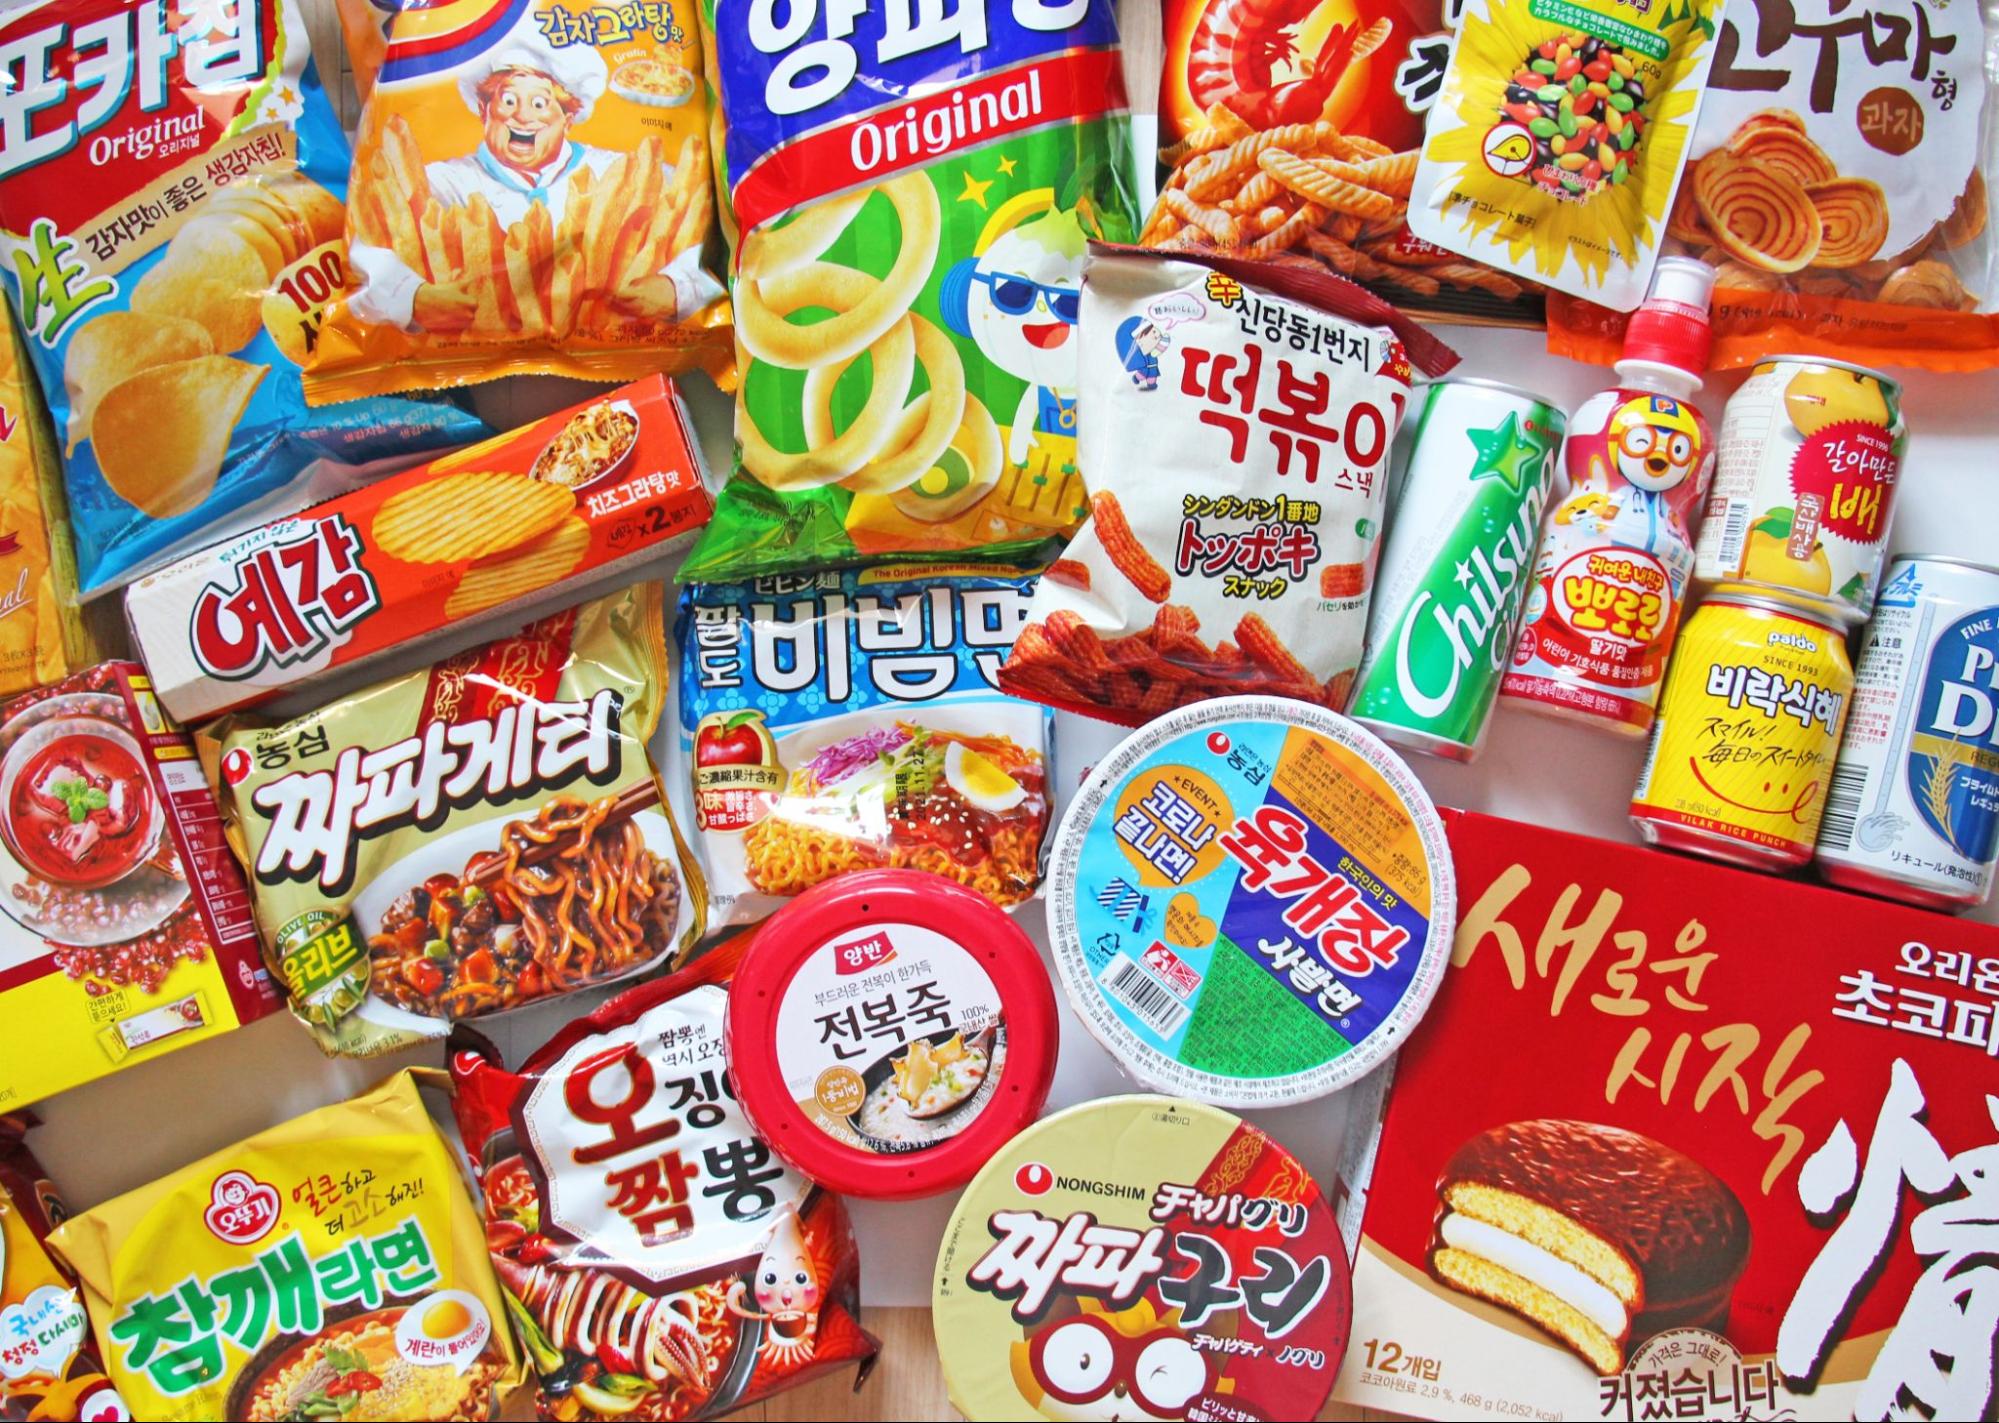 【おうちで韓国】自宅で旅行気分が楽しめる、おすすめ韓国食品26選